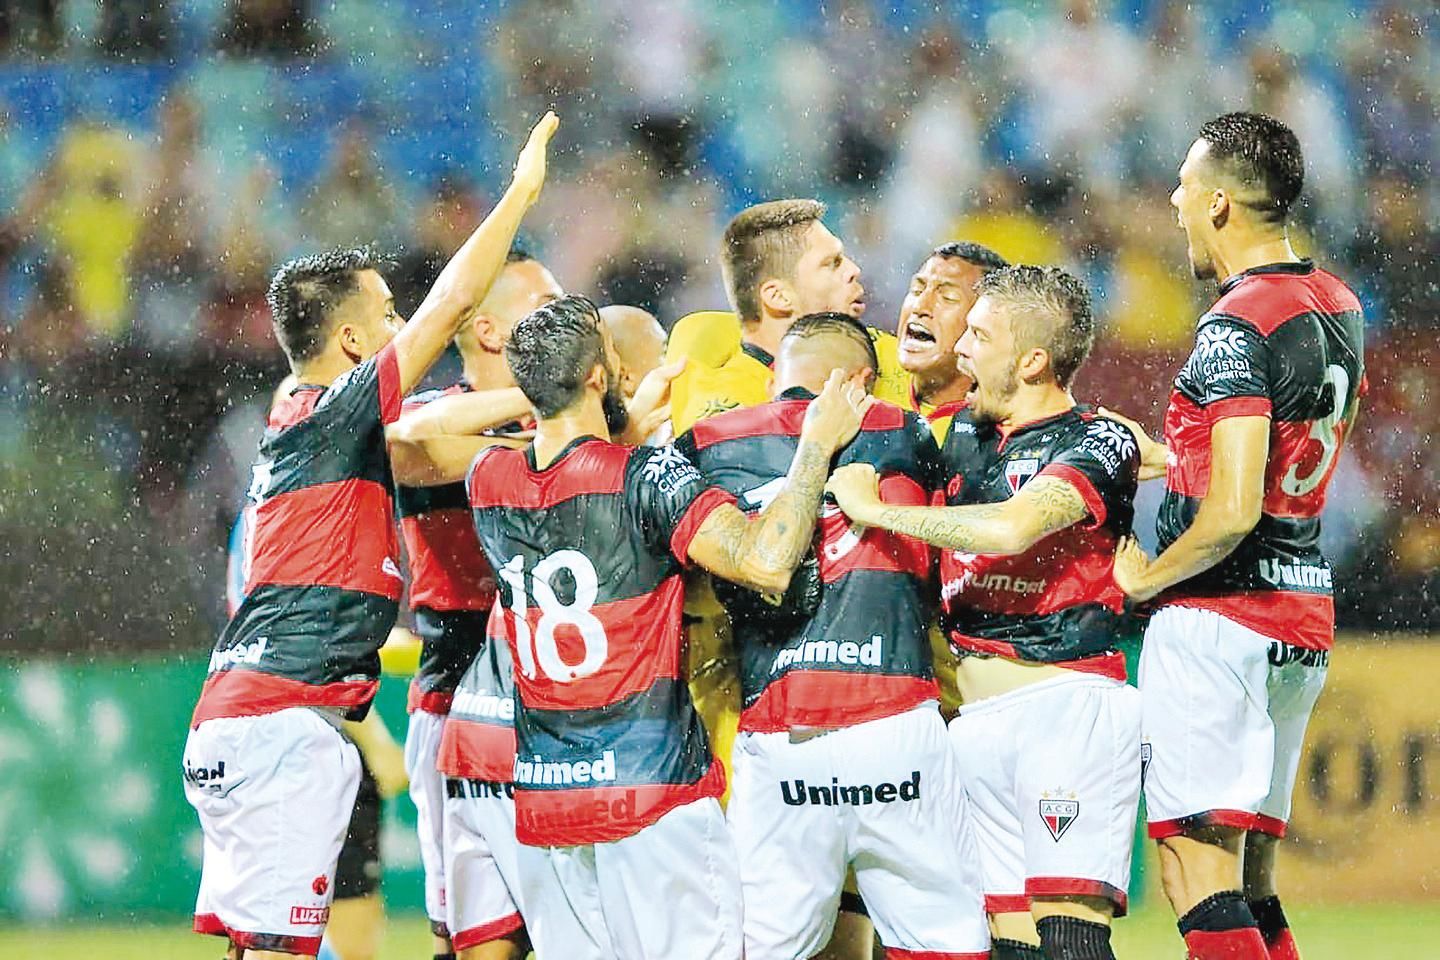 Sport Recife e as premiadas ações de marketing do clube - Ataque Marketing